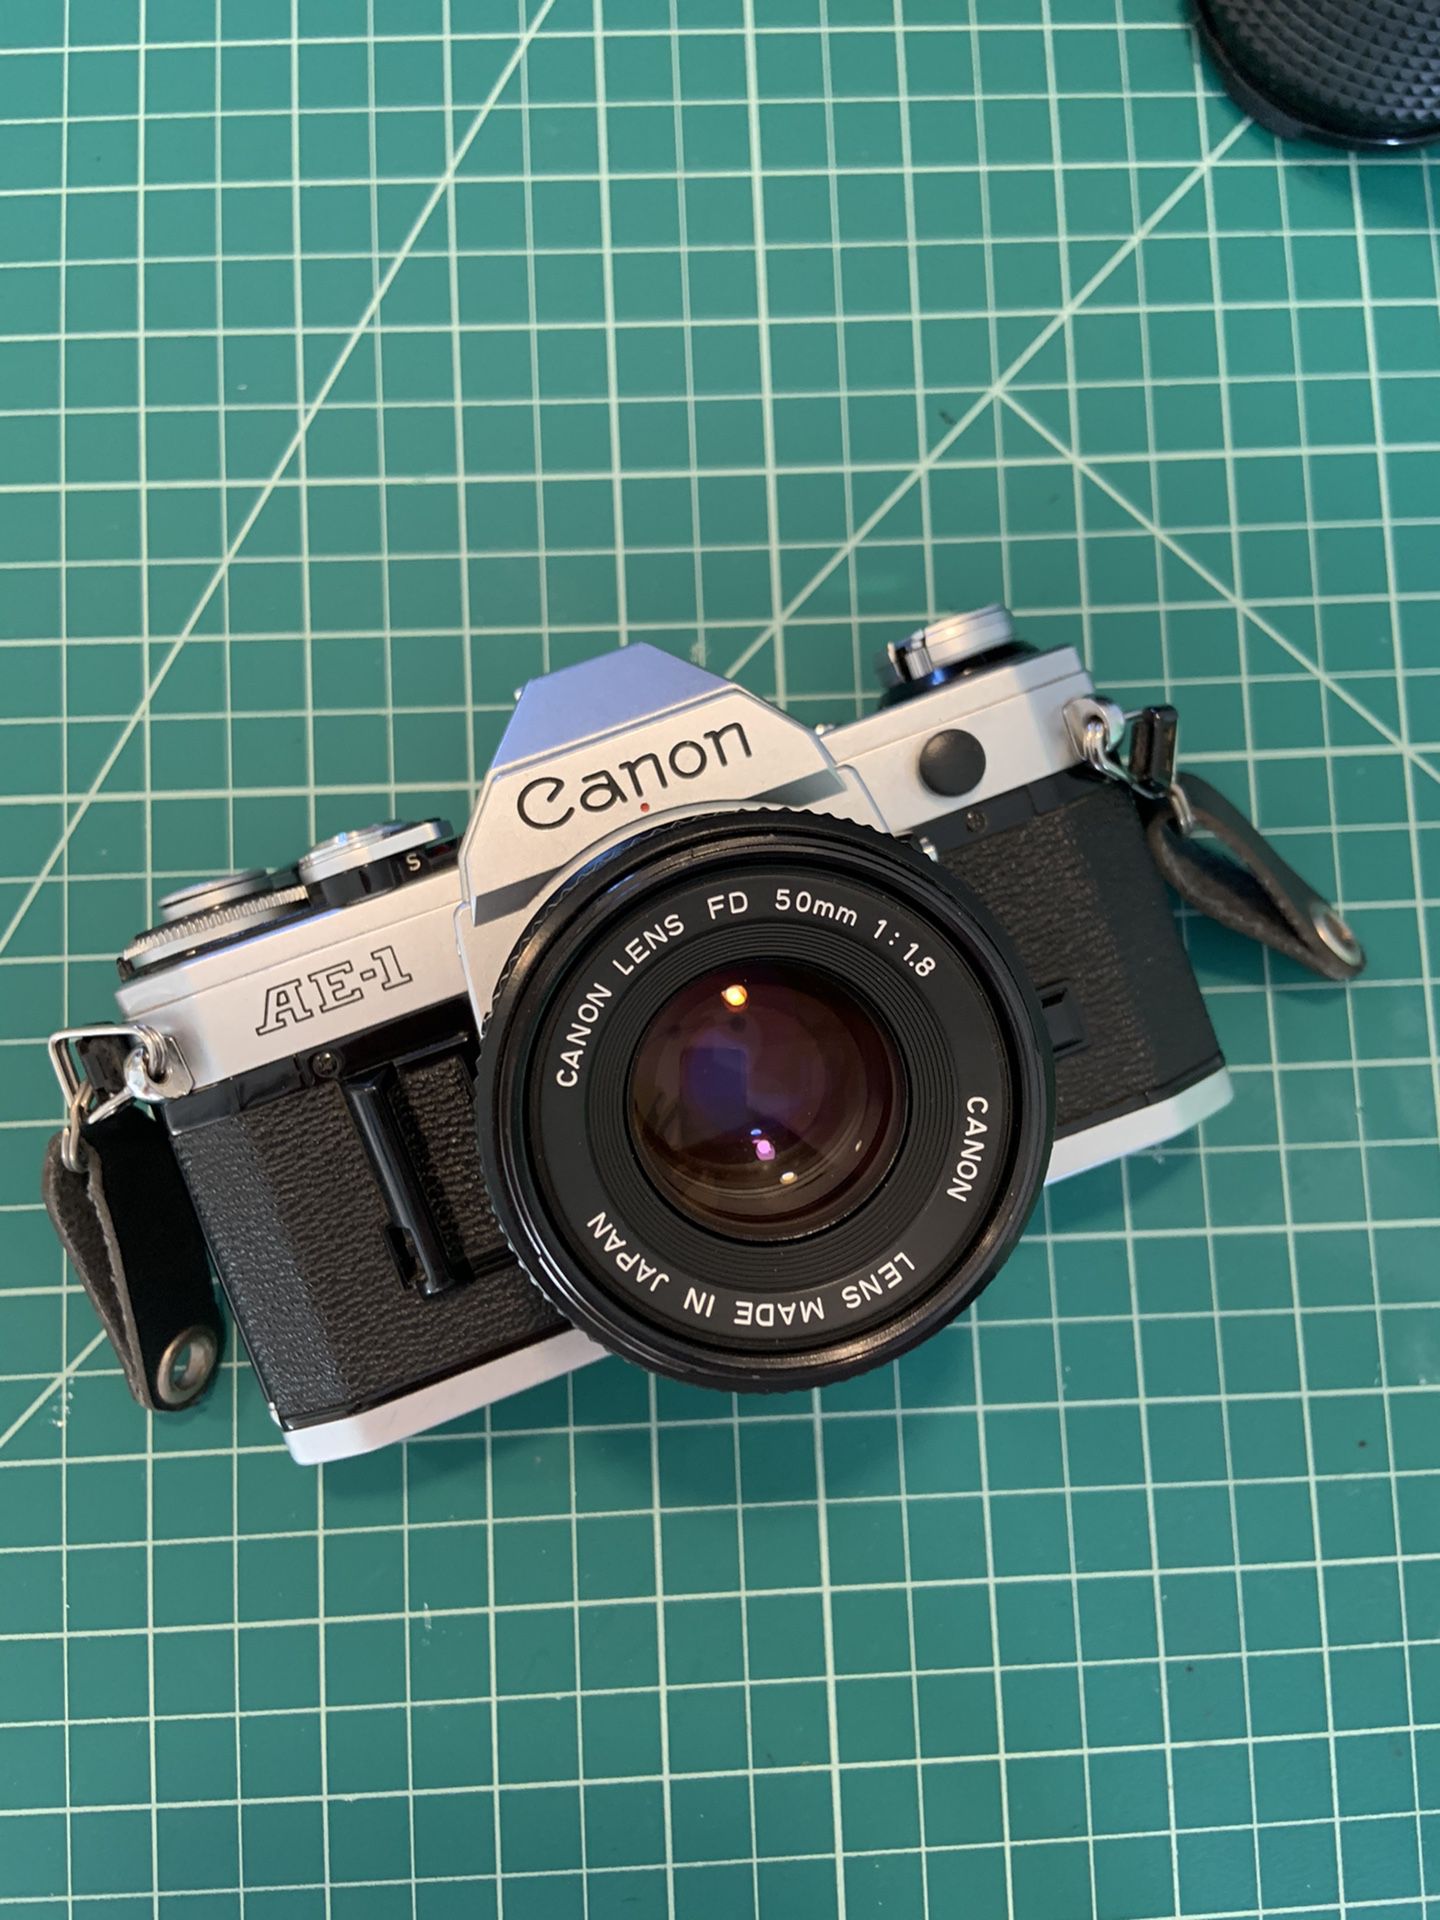 Canon ae-1 classic